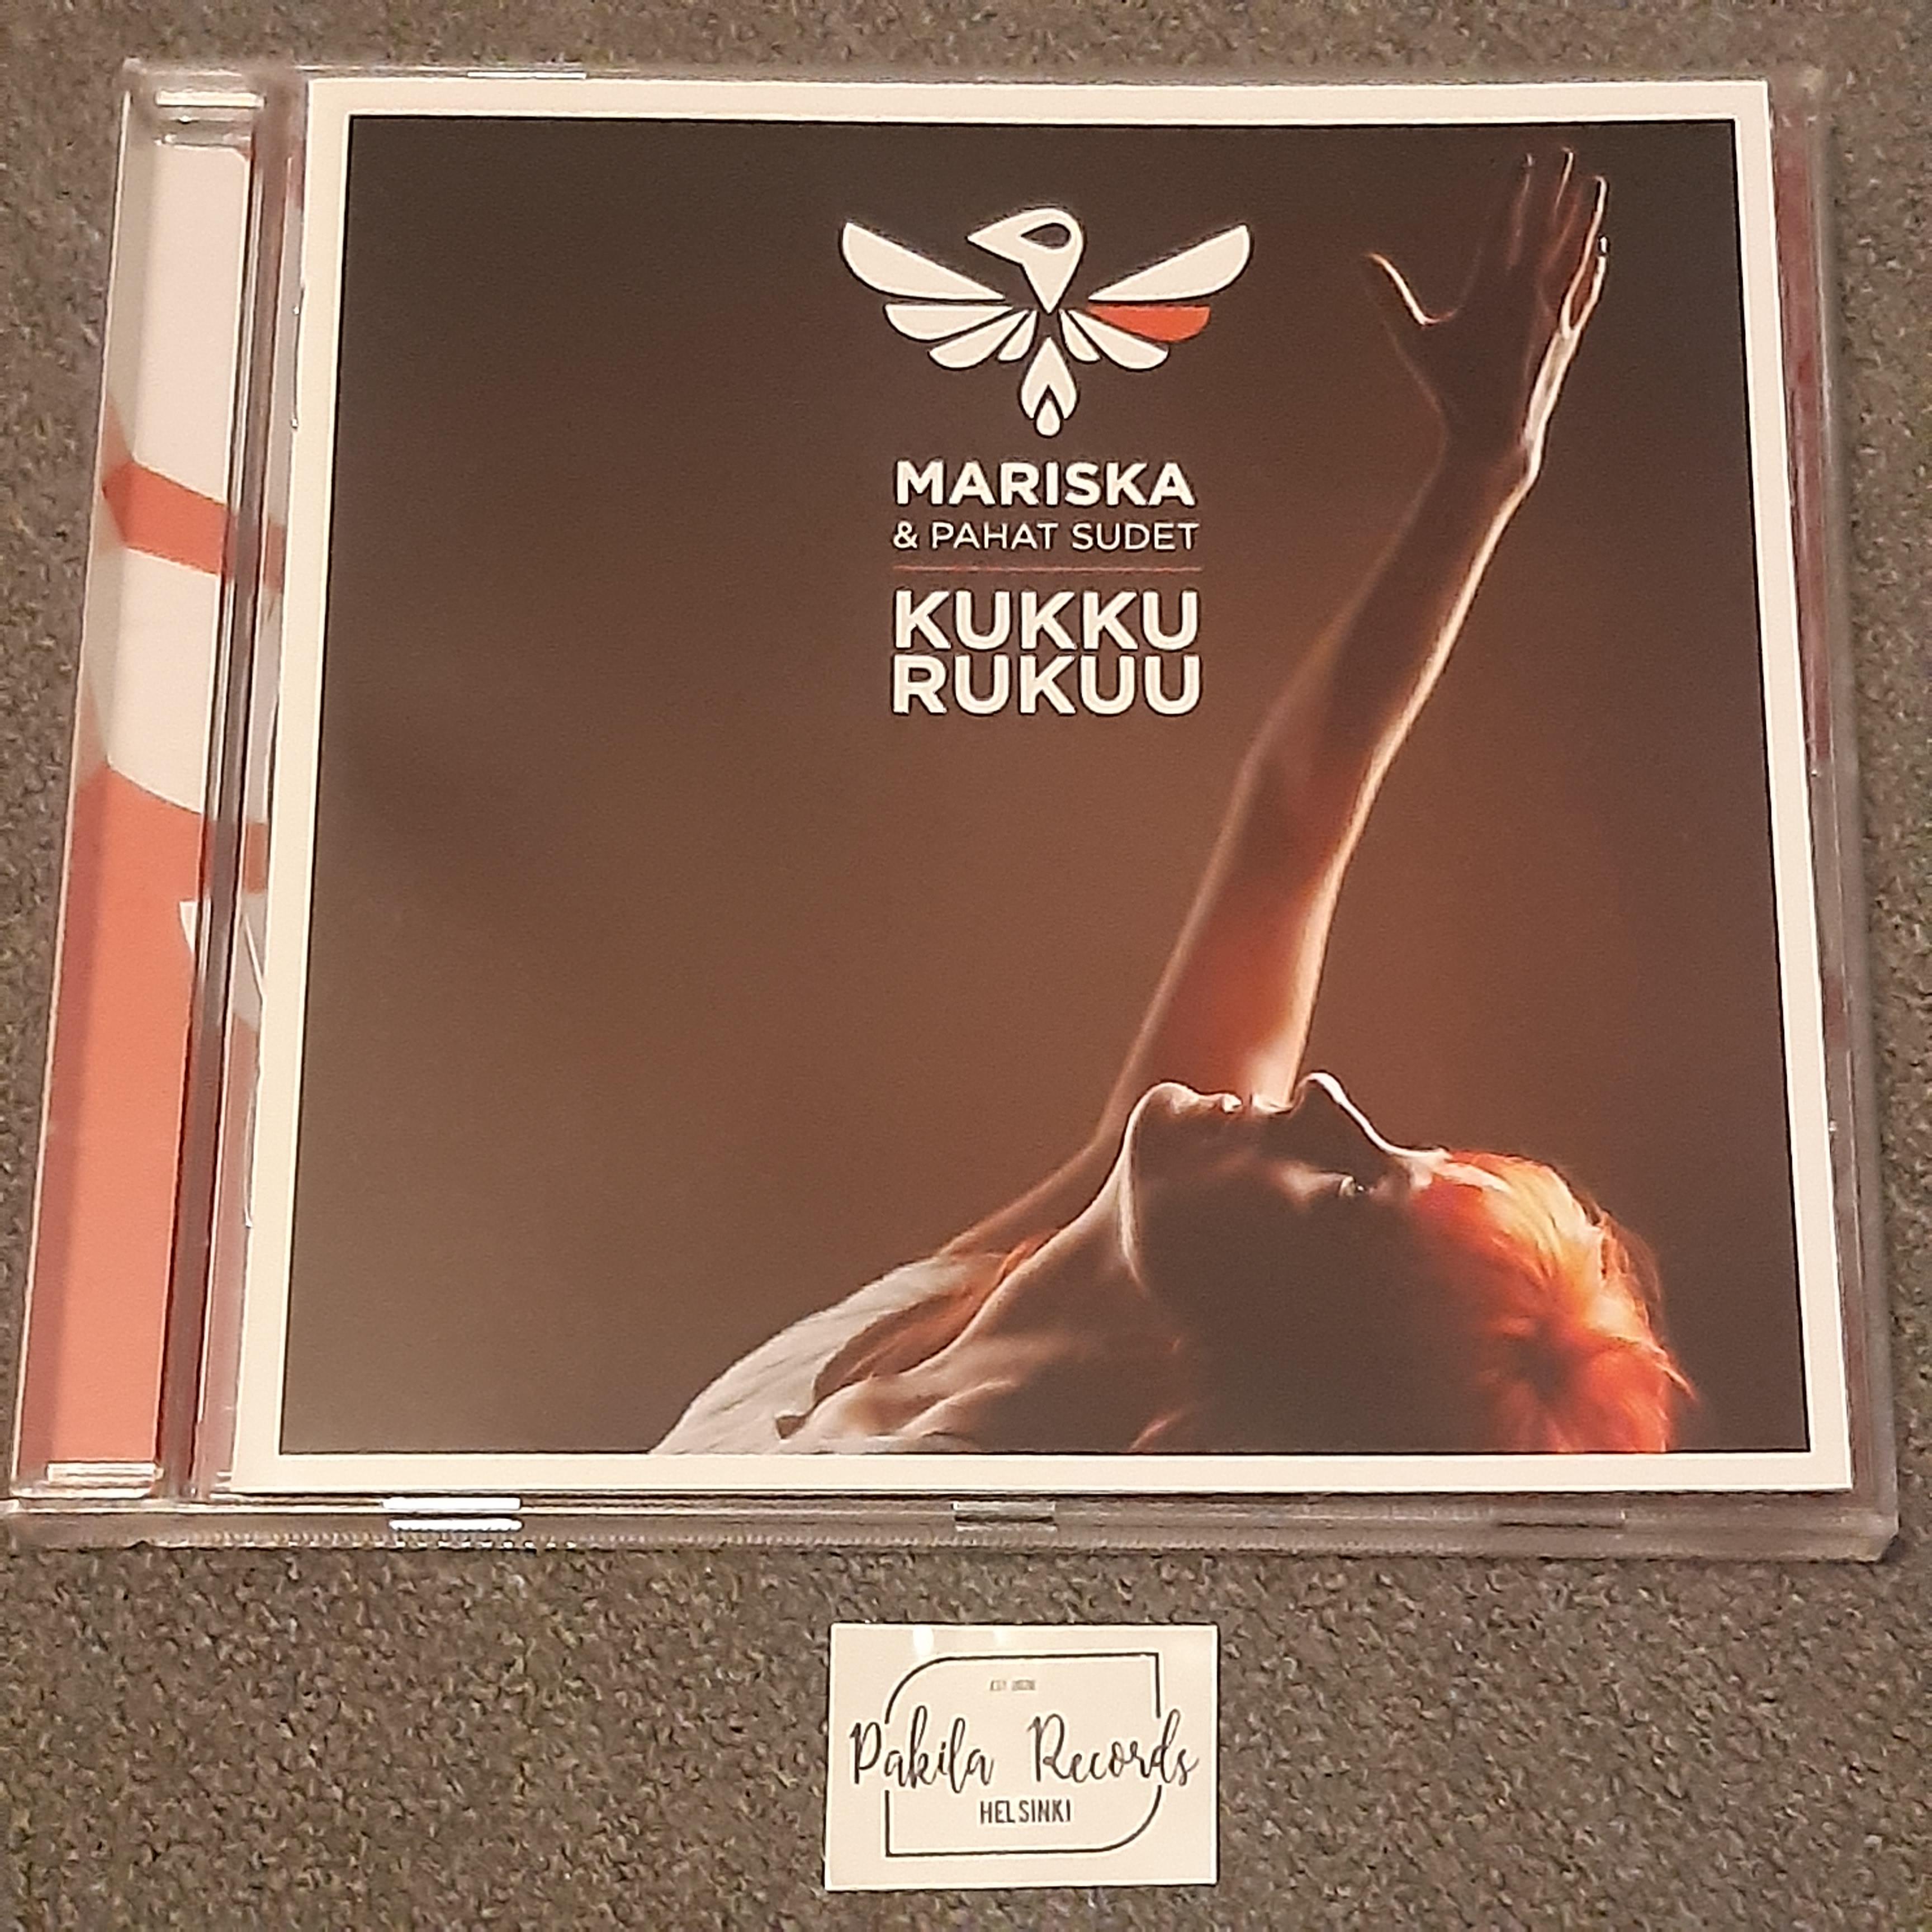 Mariska & Pahat Sudet - Kukkurukuu - CD (käytetty)